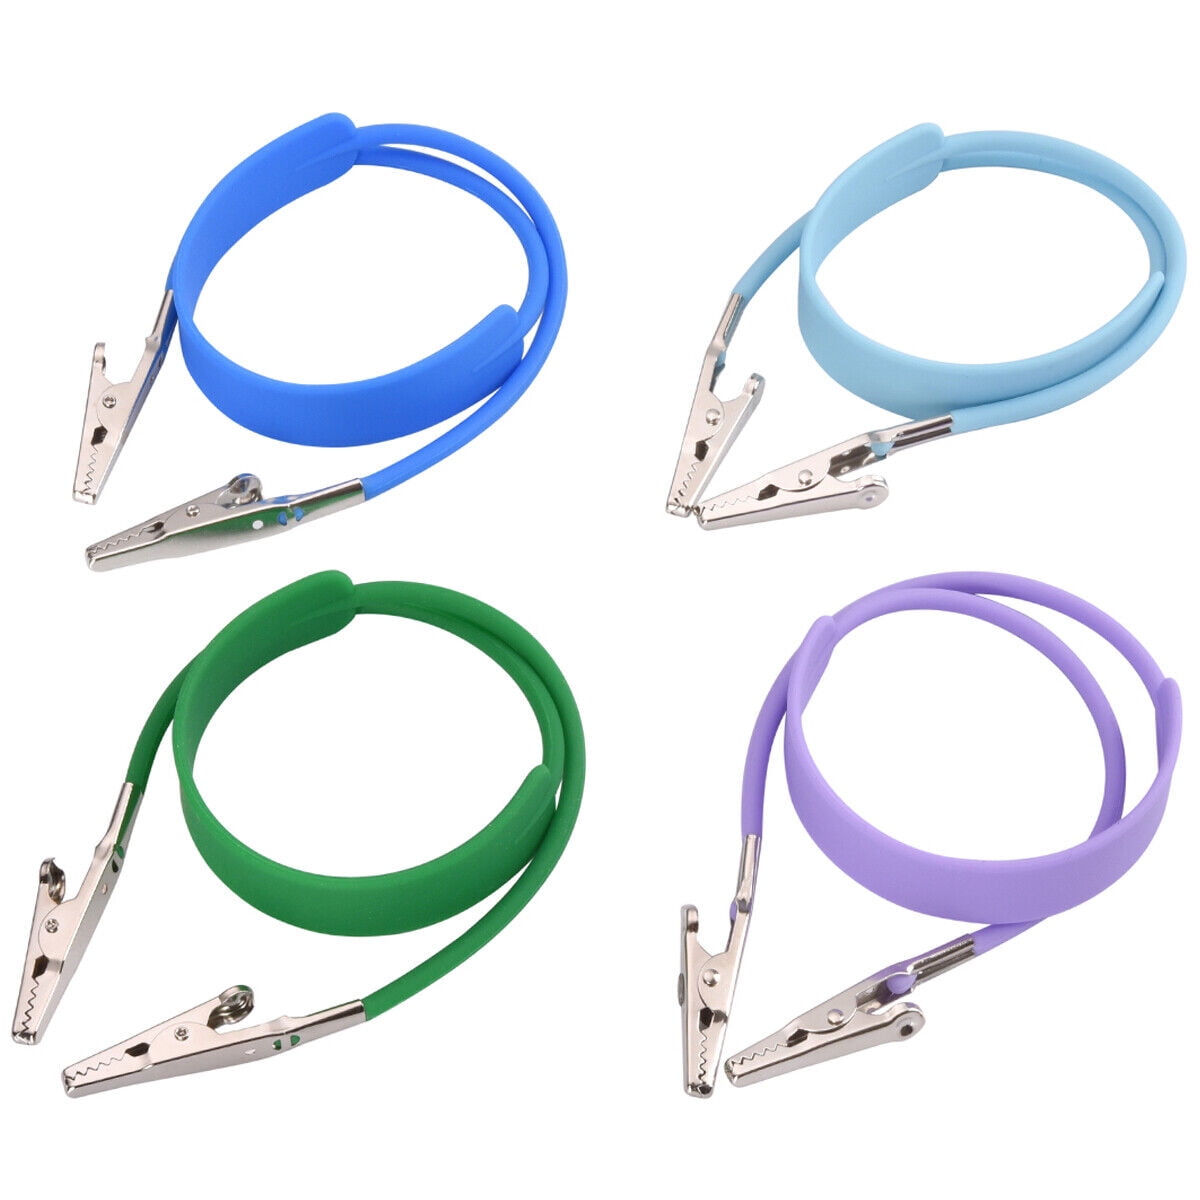 10 Pack Assorted Bib Clip Holders for Dental Bibs Napkins - Blue, Green,  Pink, Purple, Orange (2 of Each Color)